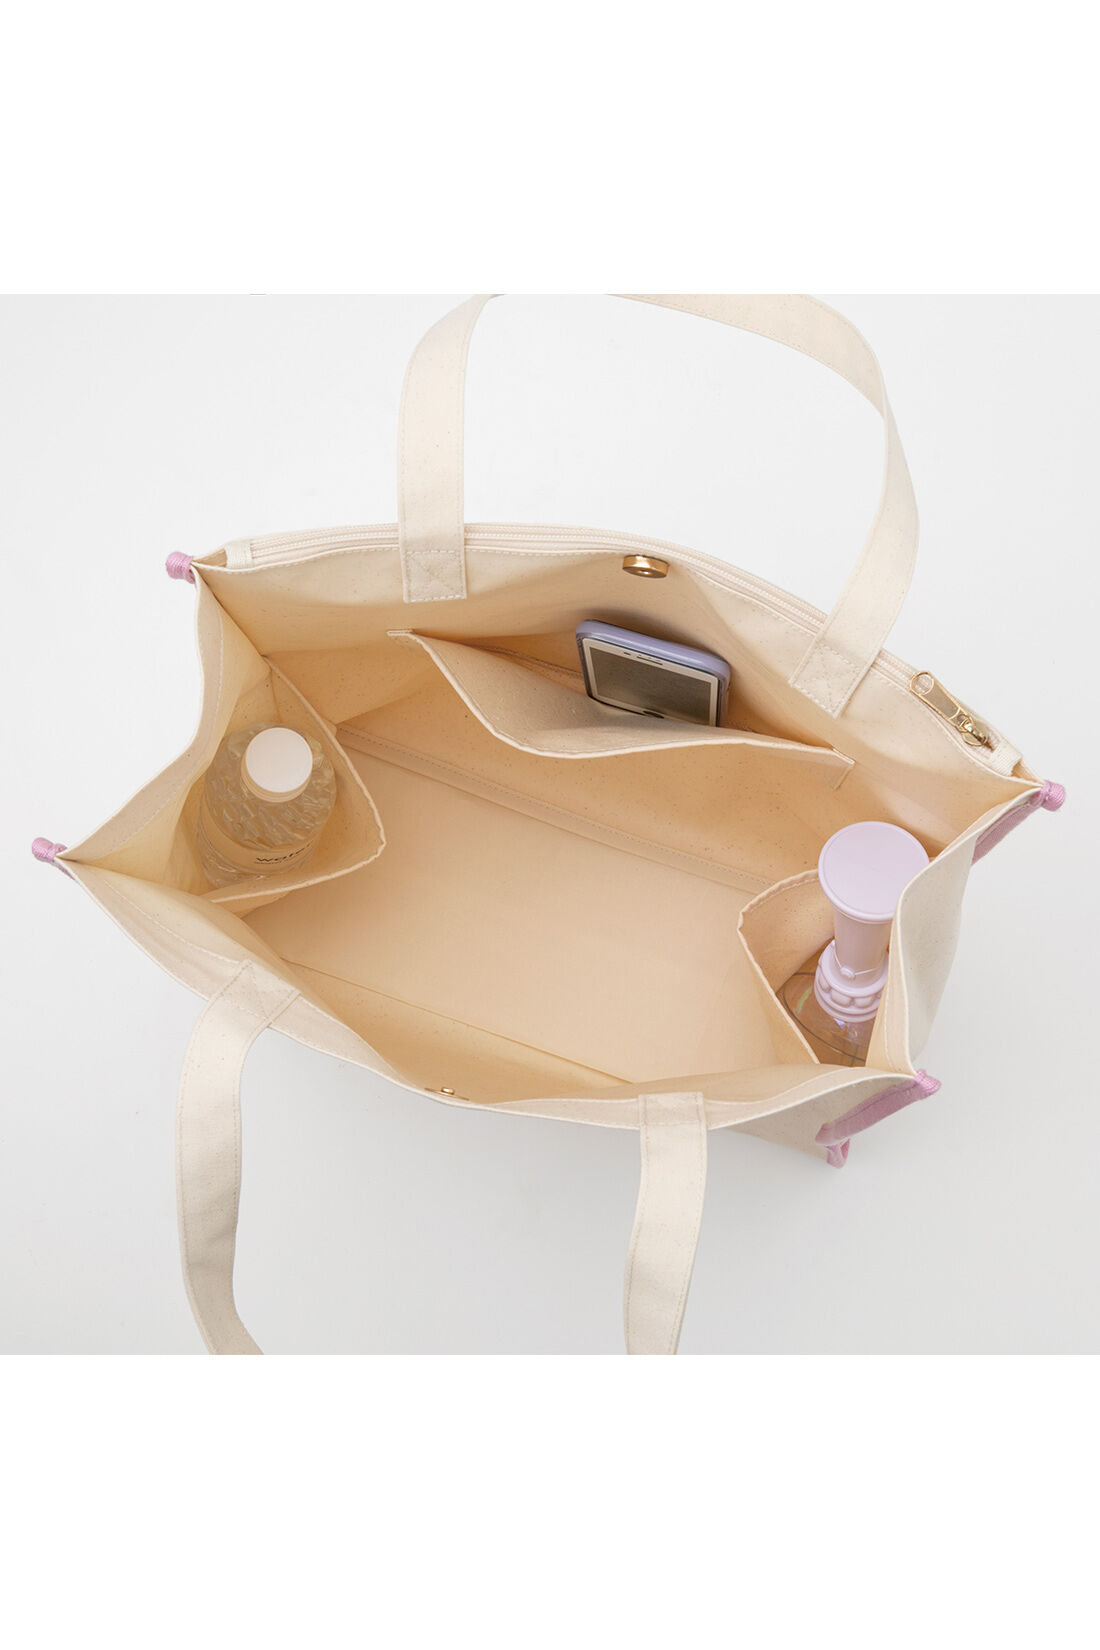 OSYAIRO|OSYAIRO　自立して便利！ うちわポケット付き ロゴトートバッグ〈ピンク〉|いつでもこっそり推しを内側にはペンライトやペットボトルを入れるのに便利なポケットを2つと、スマホなどを収納できるポケットを搭載。内側コーティングで汚れにくいのも魅力。